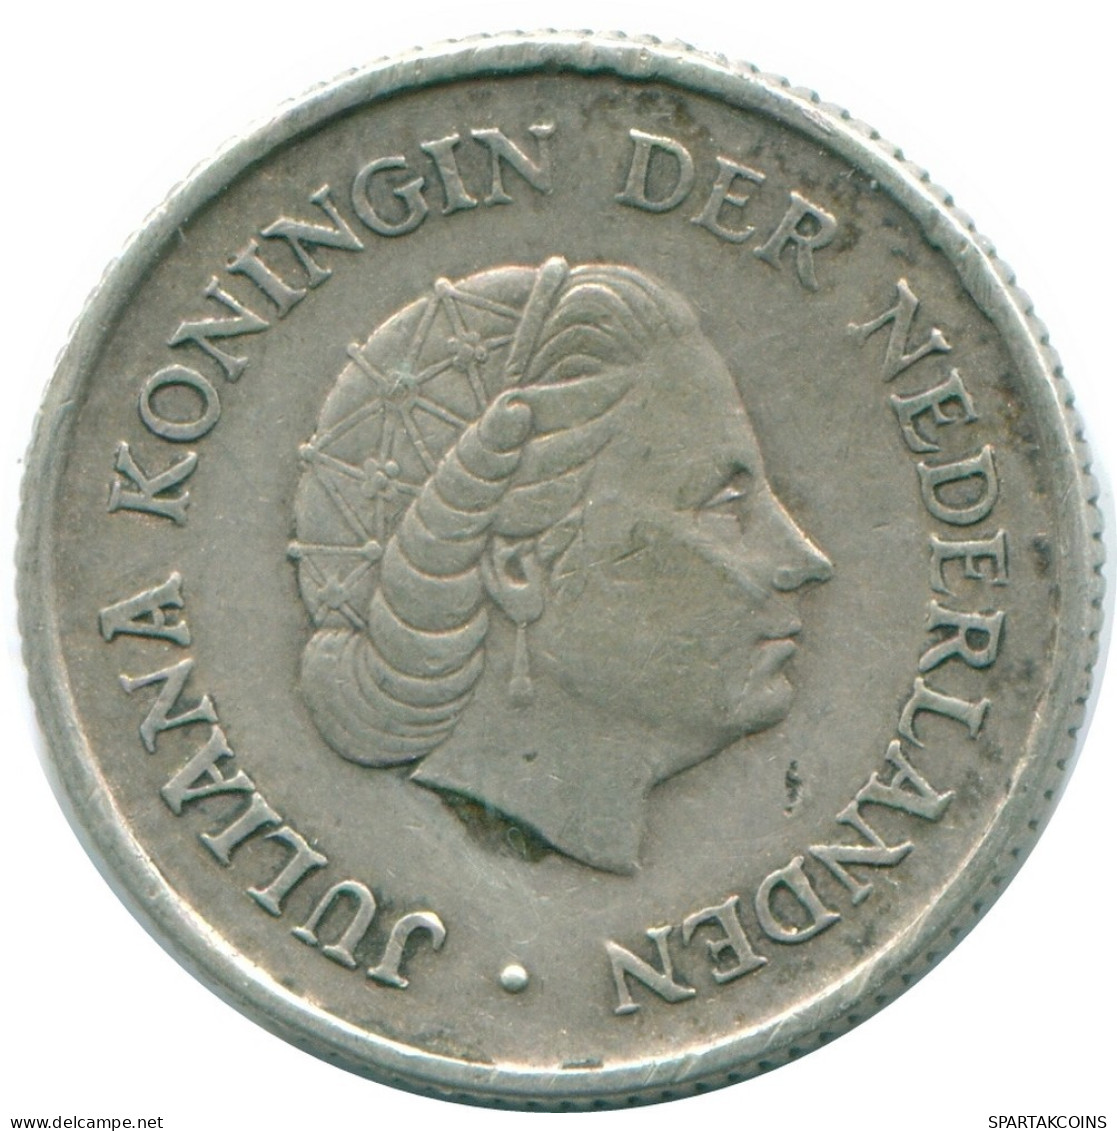 1/4 GULDEN 1965 NIEDERLÄNDISCHE ANTILLEN SILBER Koloniale Münze #NL11352.4.D.A - Antille Olandesi